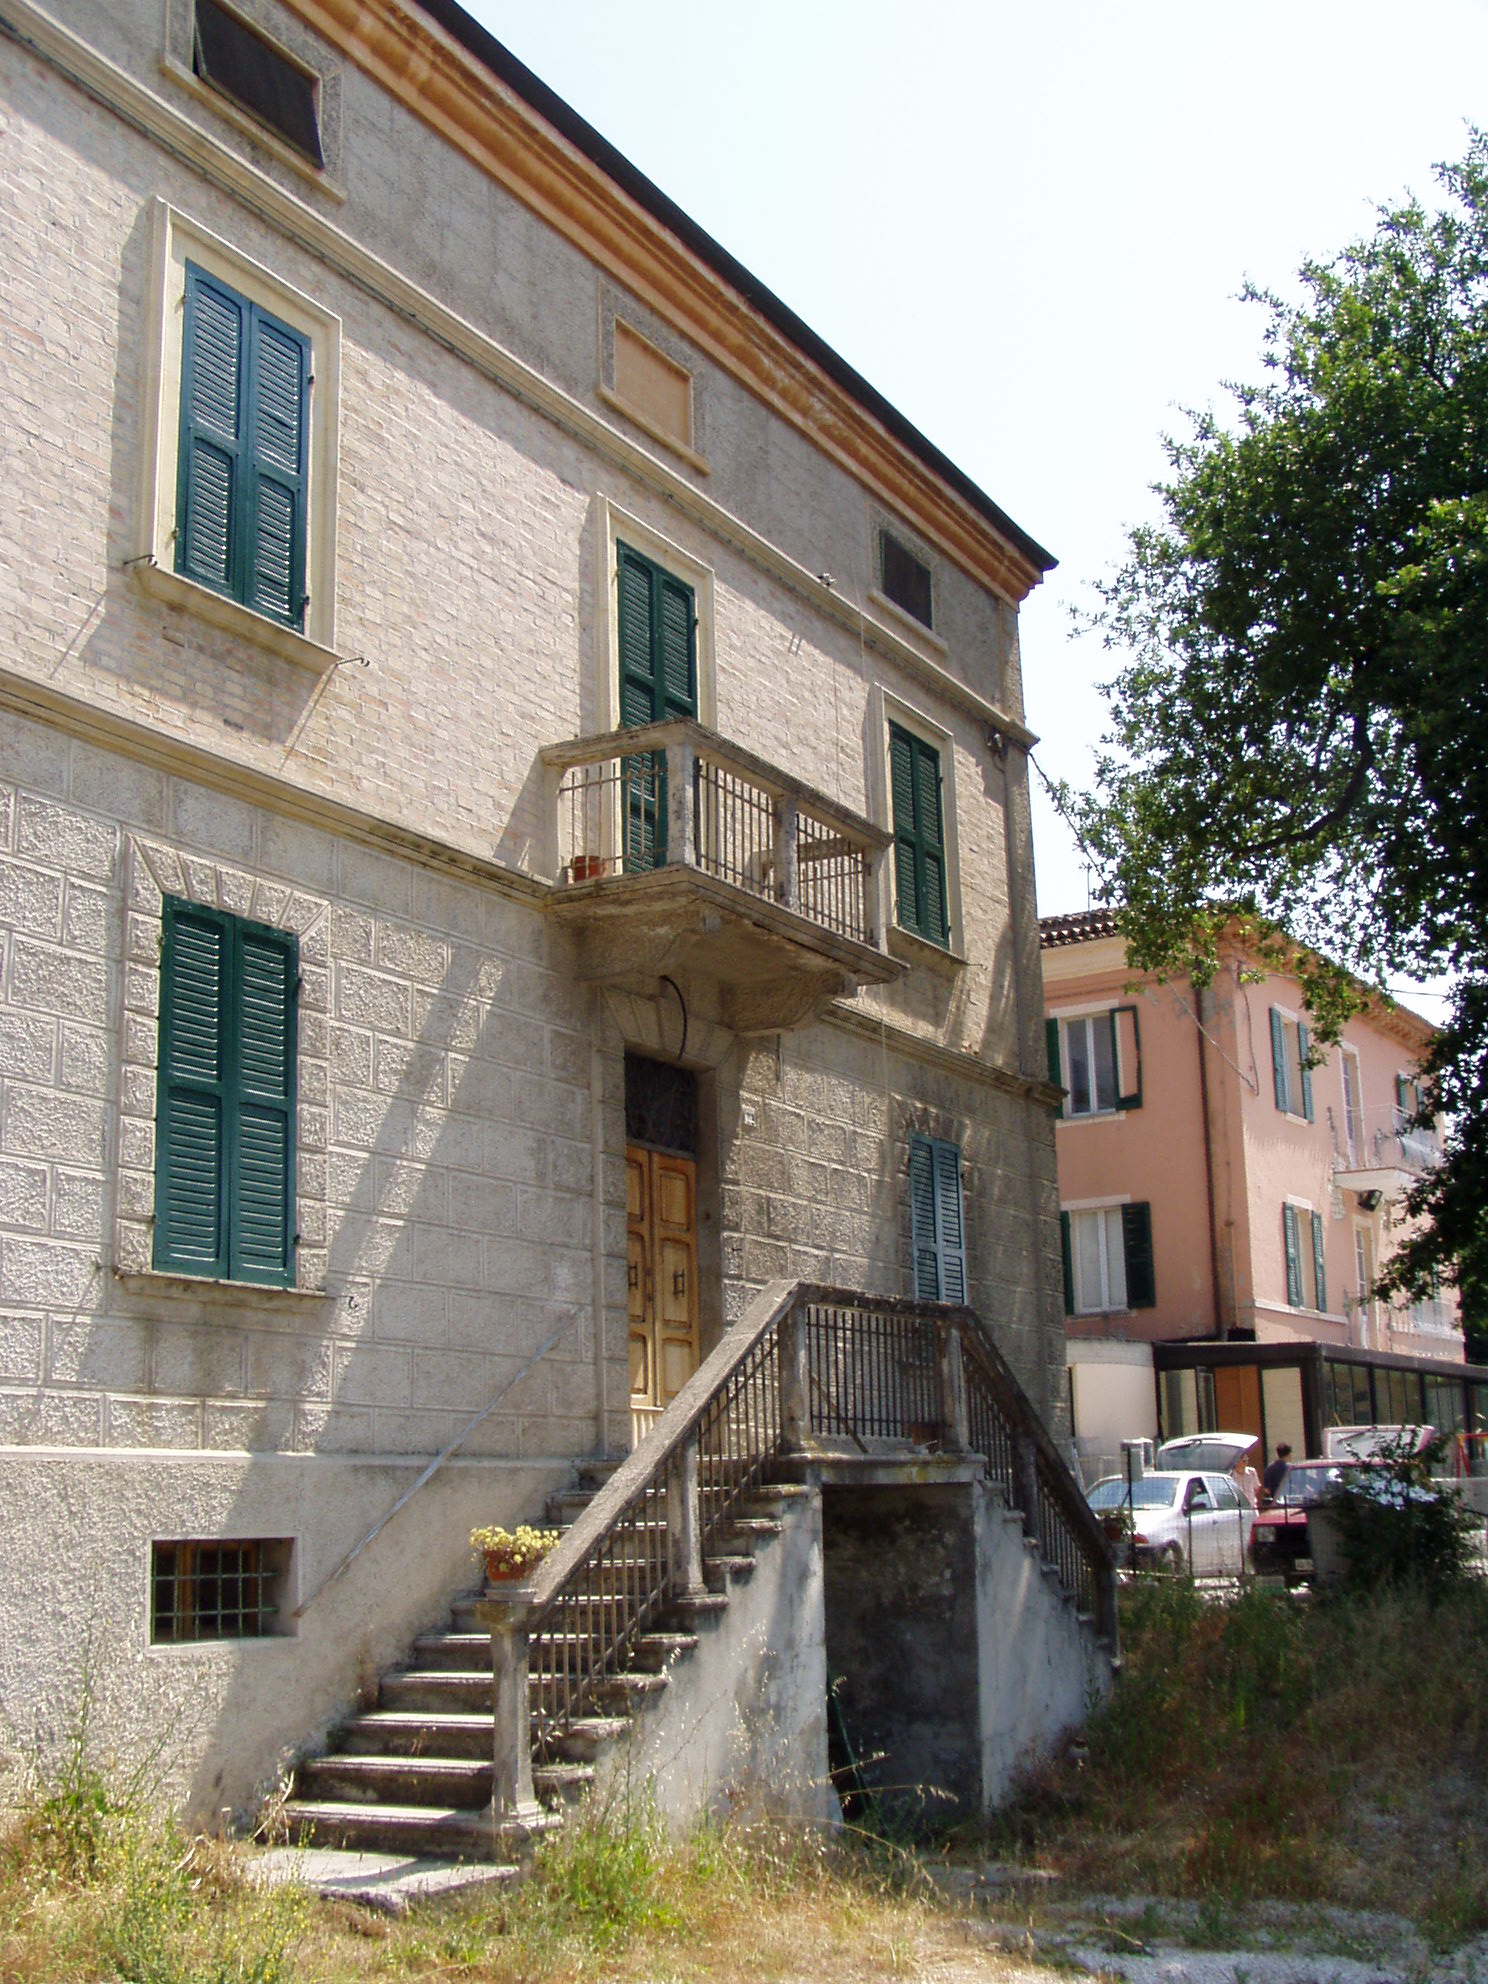 Villa suburbana signorile (villa suburbana, nobiliare) - Fossombrone (PU) 